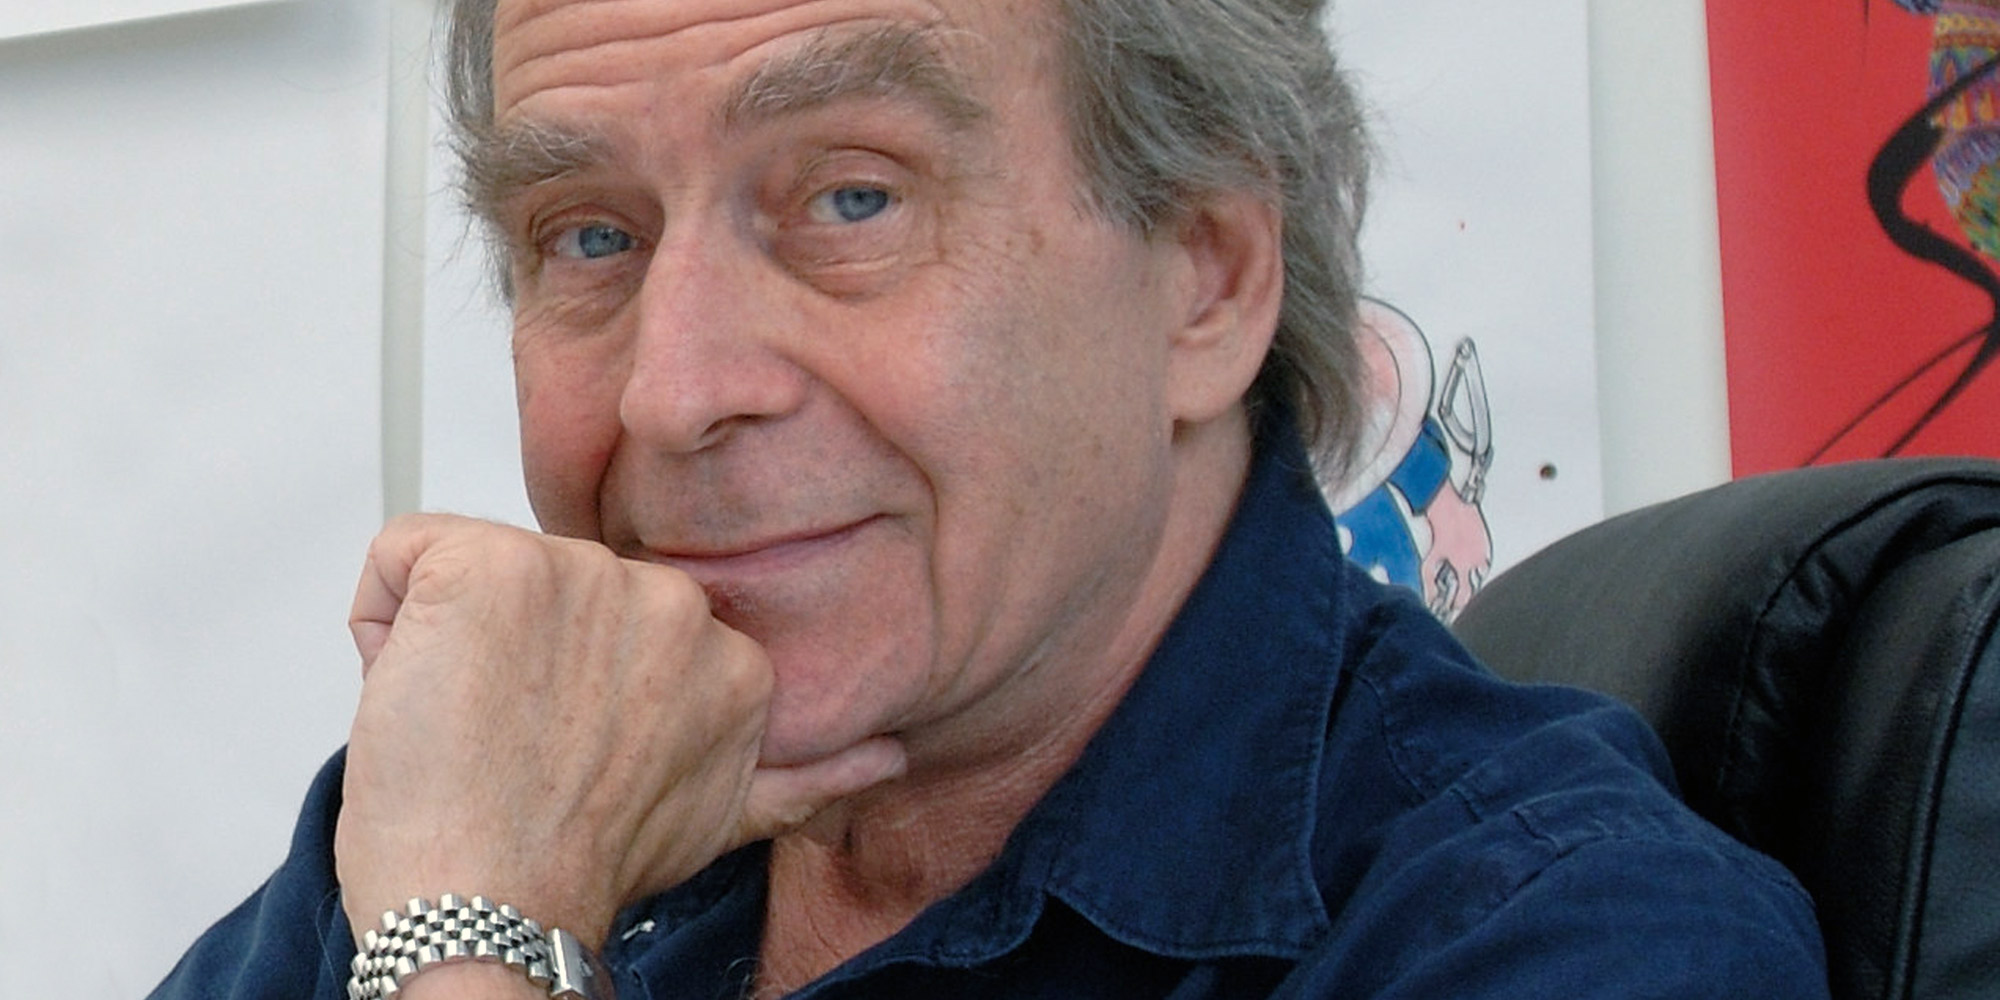 Der britische Künstler ist besonders für seine Mitarbeit am Disney-Zeichentrickfilm "Hercules" und dem Pink-Floyd-Projekt "The Wall" bekannt. 